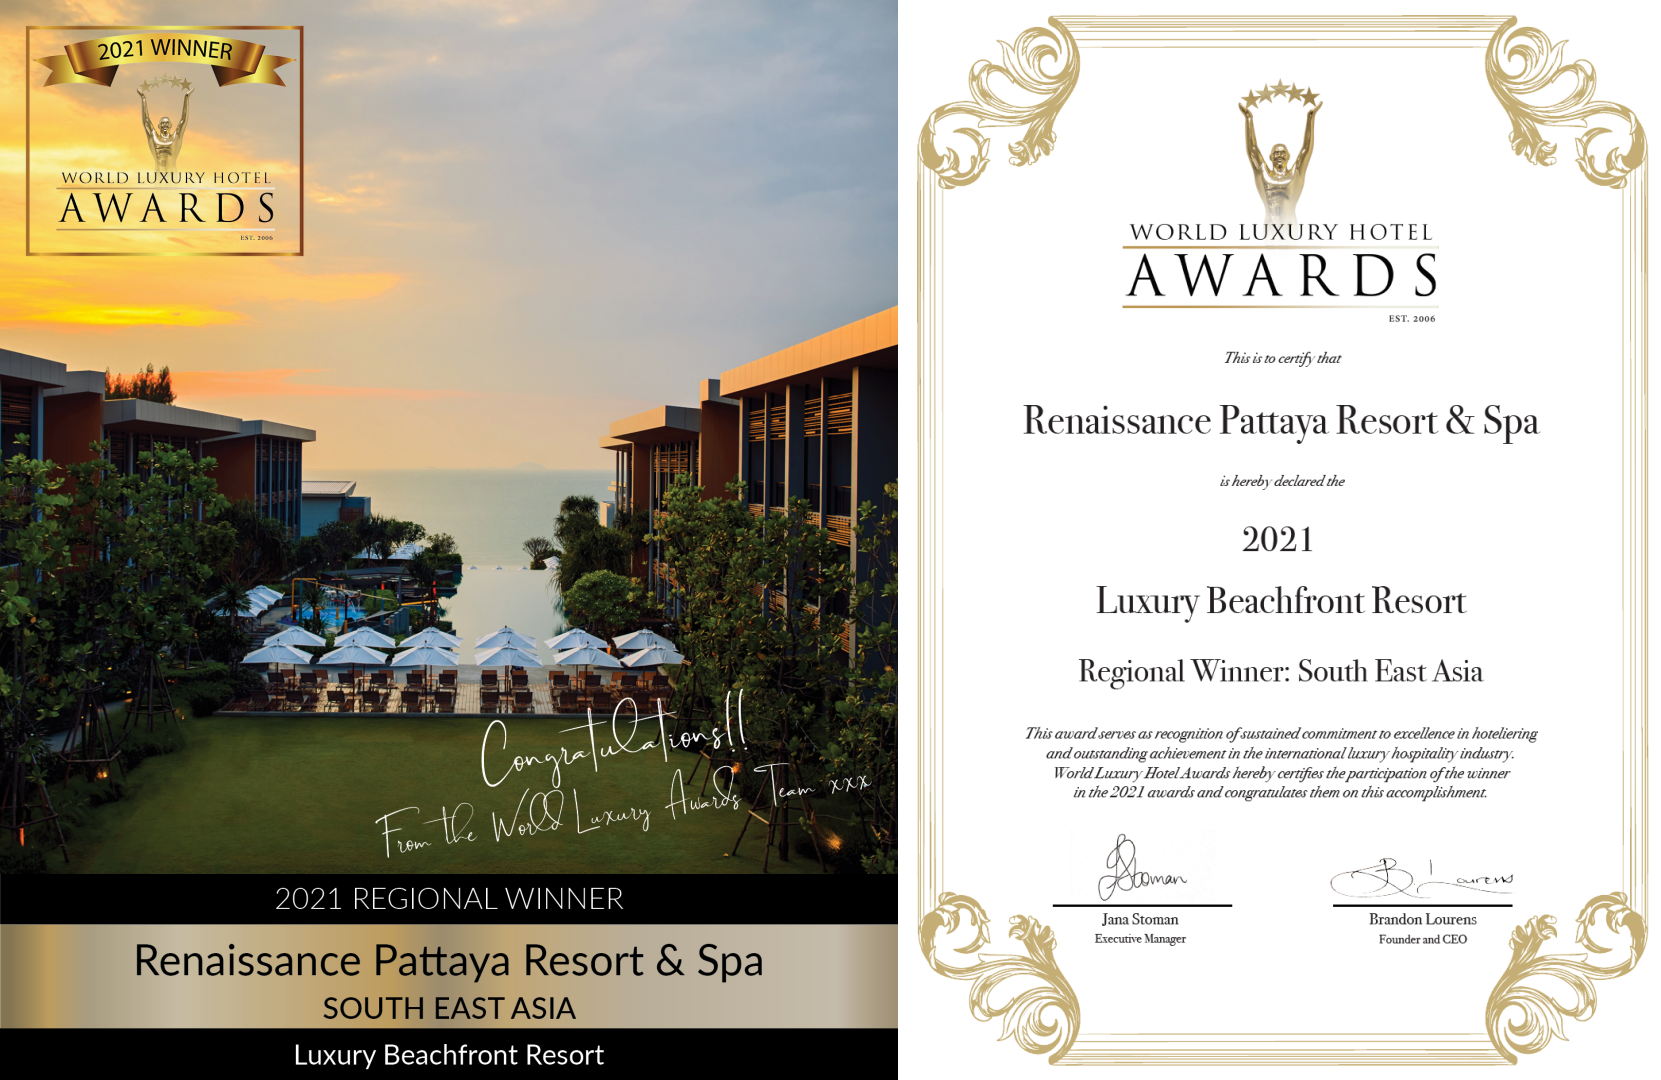 เรเนซองส์ พัทยา ได้รับรางวัล Luxury Beachfront Resort ประจำภูมิภาคเอเชียตะวันออกเฉียงใต้ จาก World Luxury Hotel Awards ประจำปี 2021